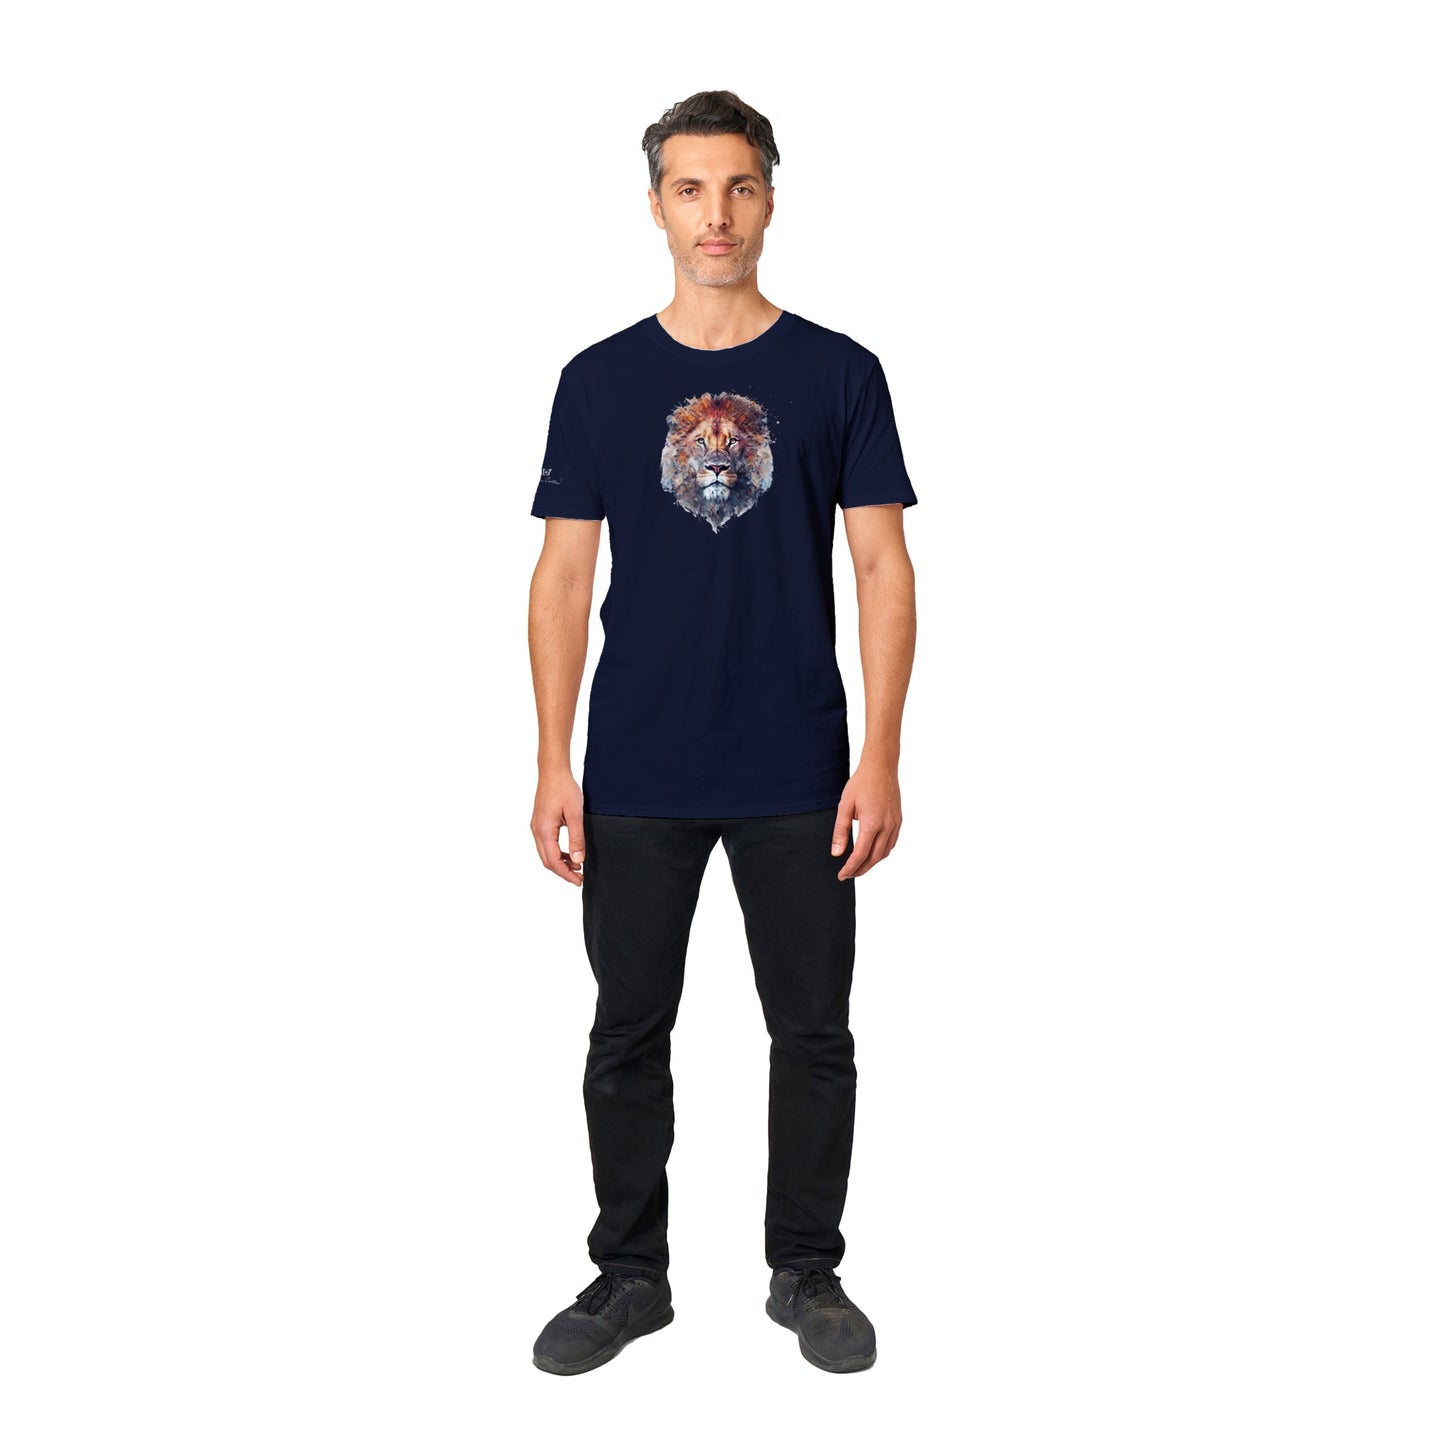 Lion - Unisex Crewneck T-shirt